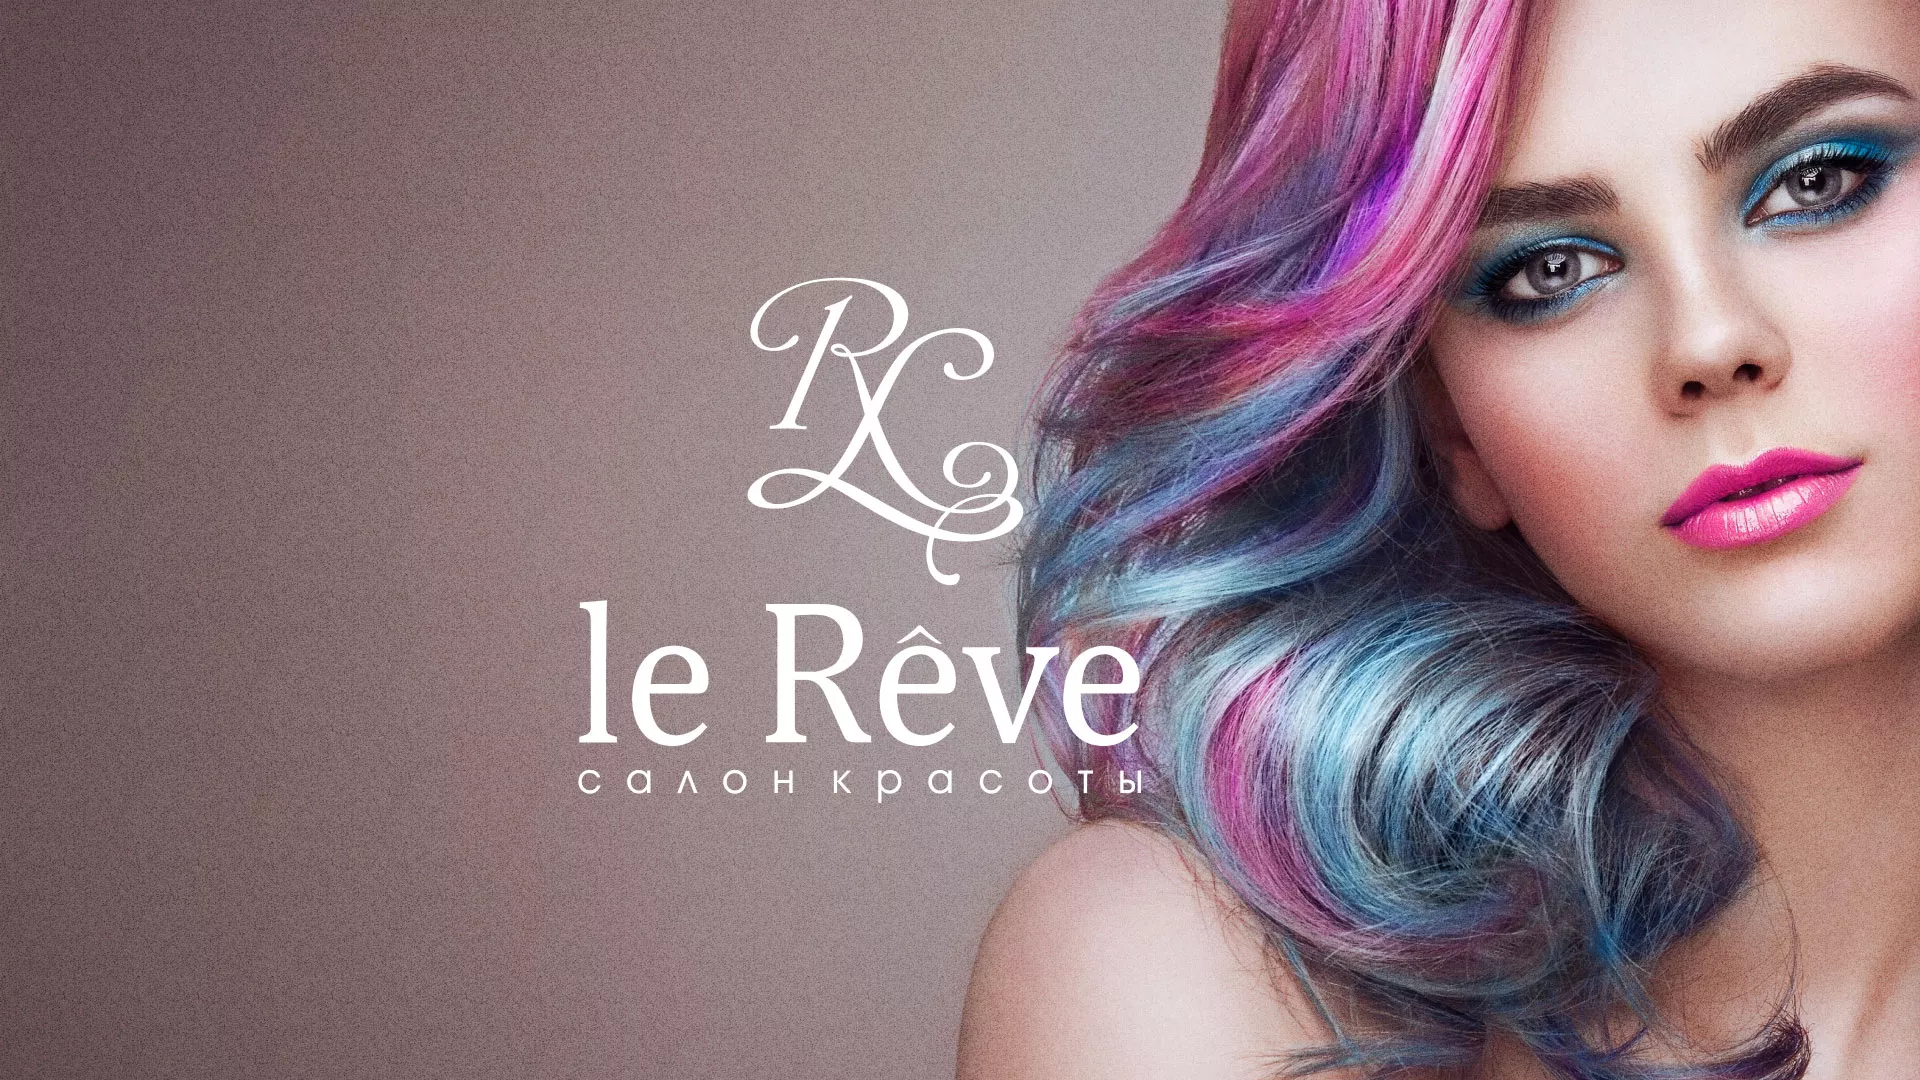 Создание сайта для салона красоты «Le Reve» в Прохладном